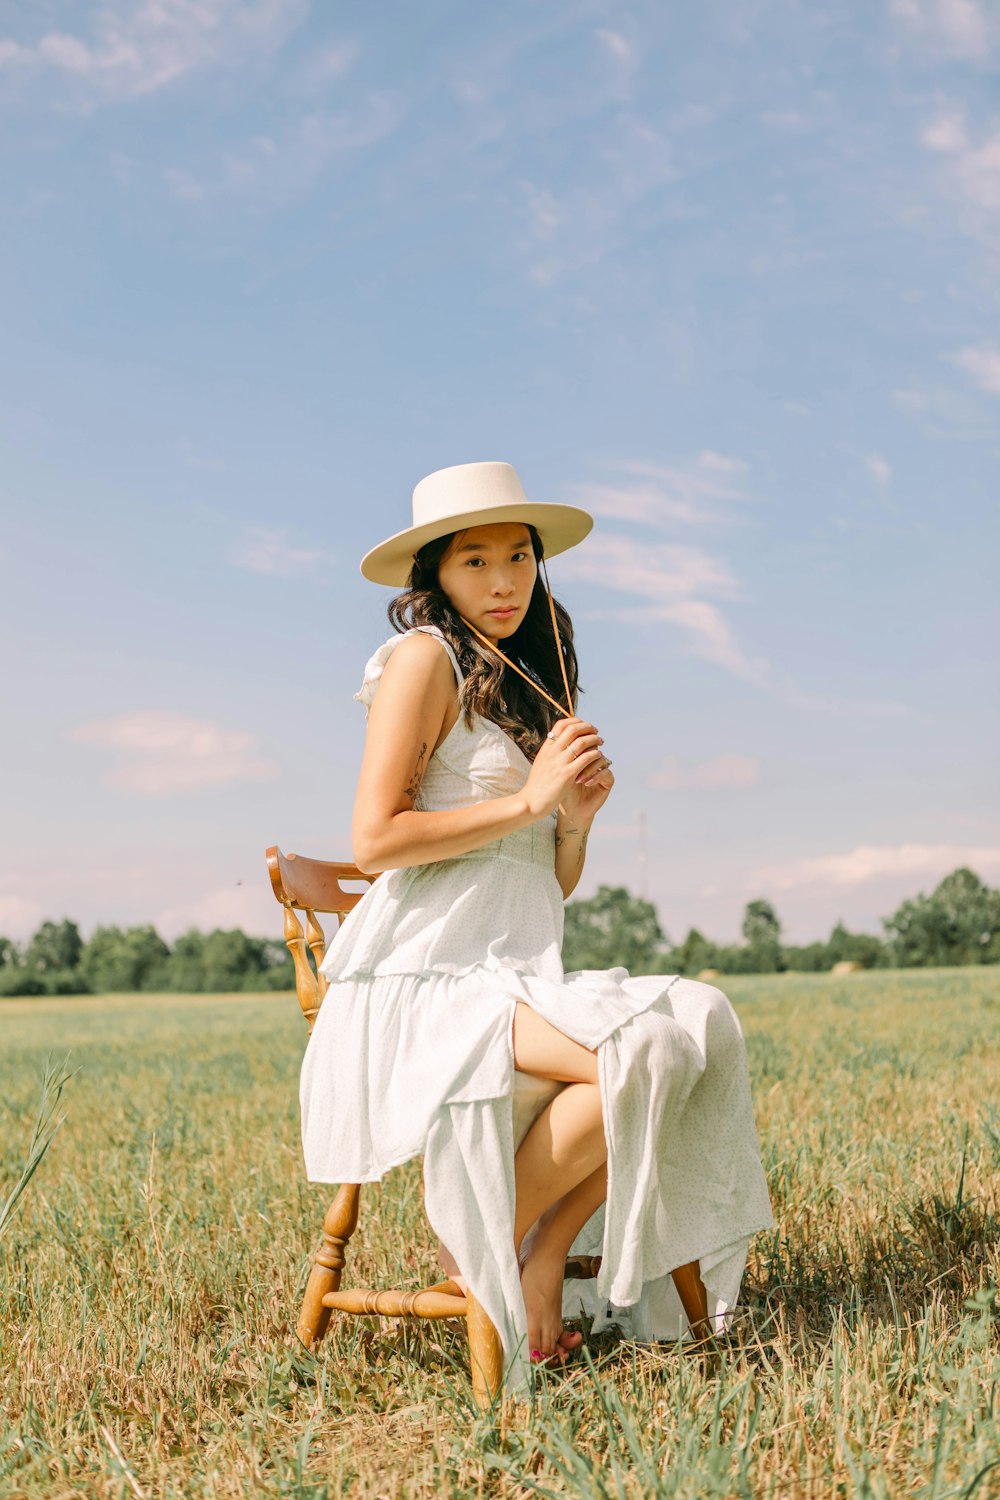 une personne en robe blanche et chapeau assise dans un champ